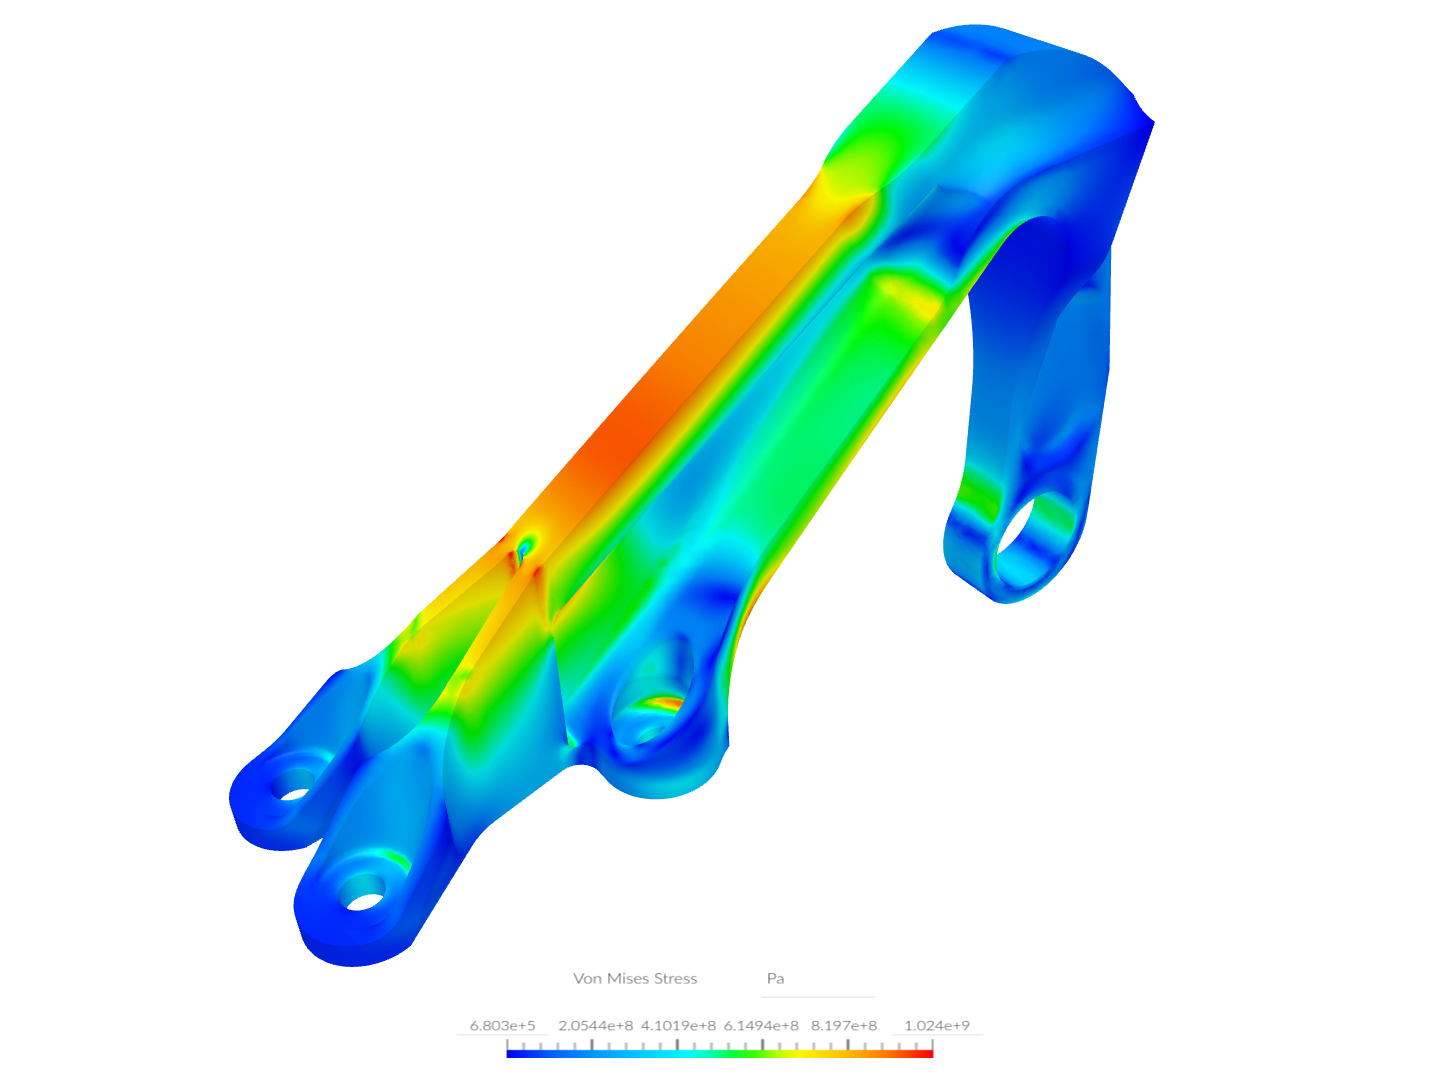 Arslan - FEM Linear, Nonlinear Analysis & Post-Processing Training - Bearing Bracket Analysis - Copy image